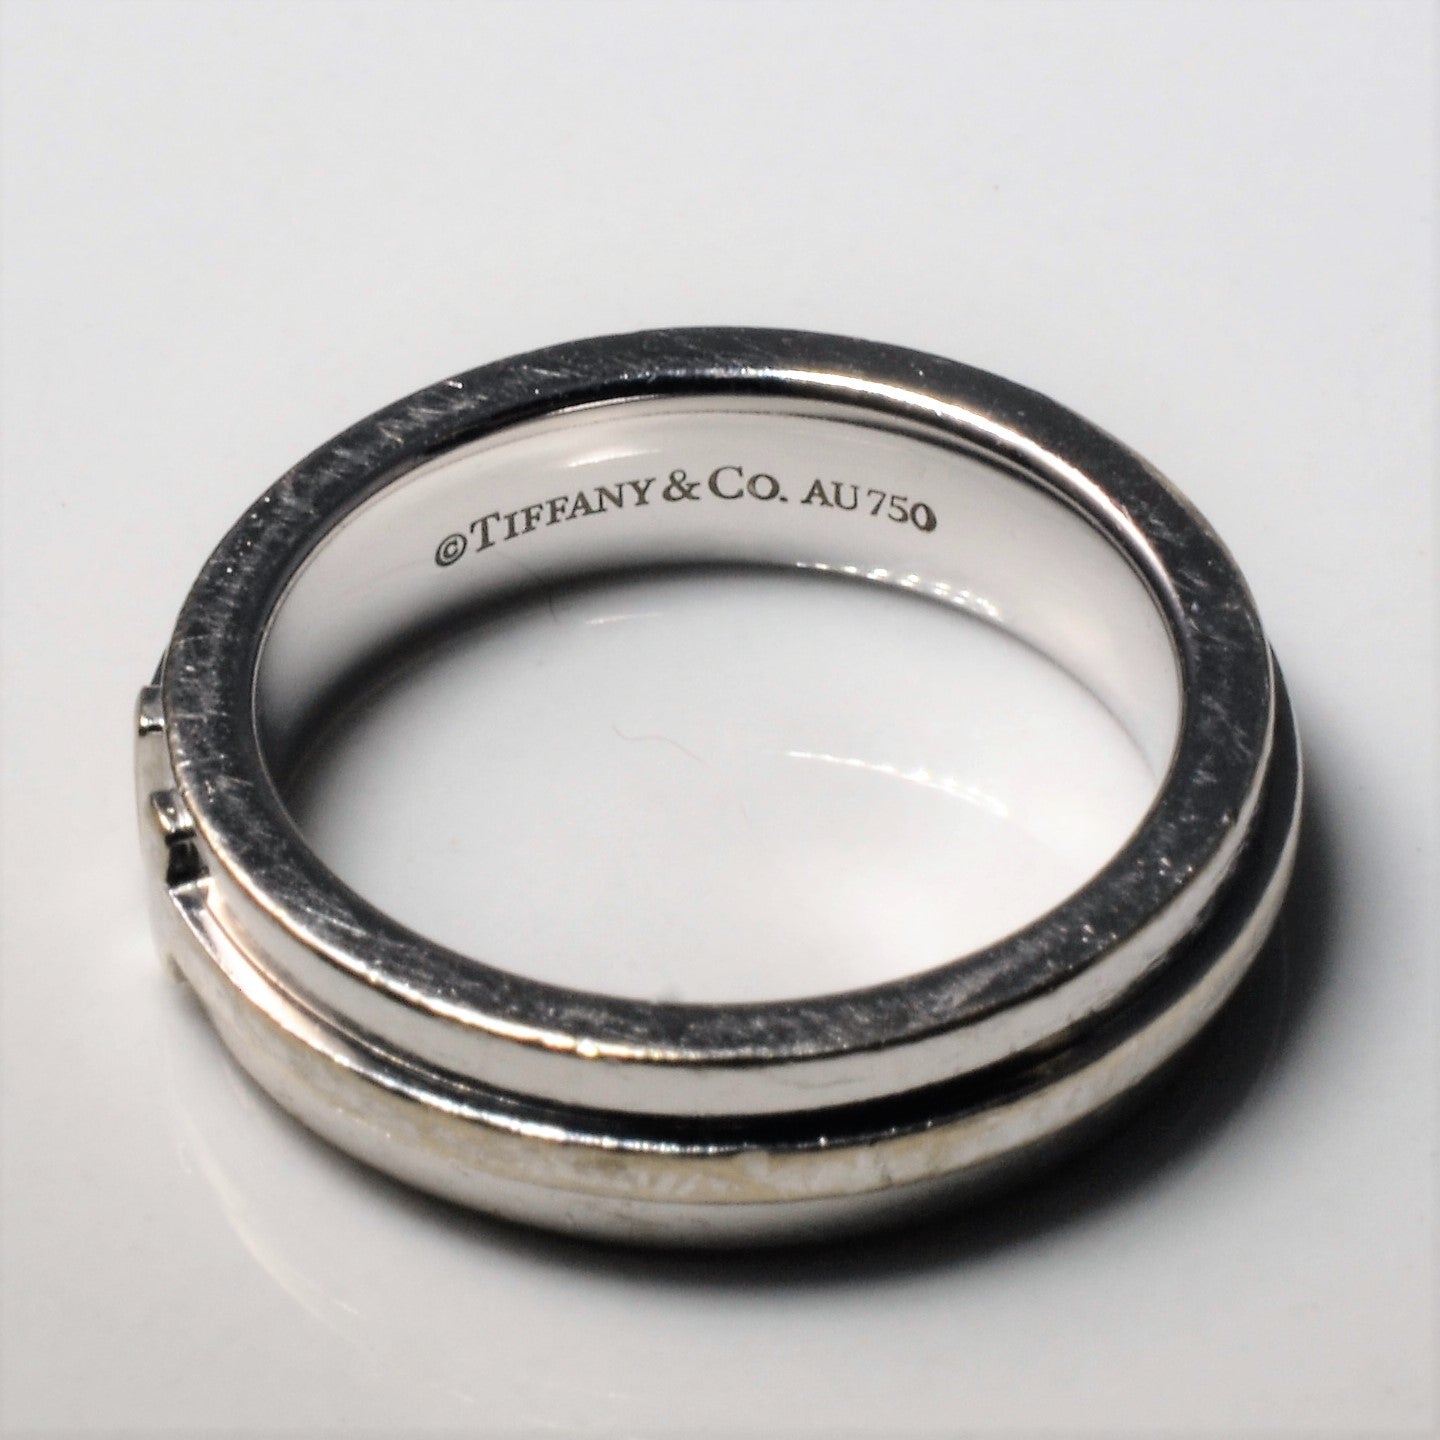 'Tiffany & Co.' Narrow T Ring | SZ 4.25 |